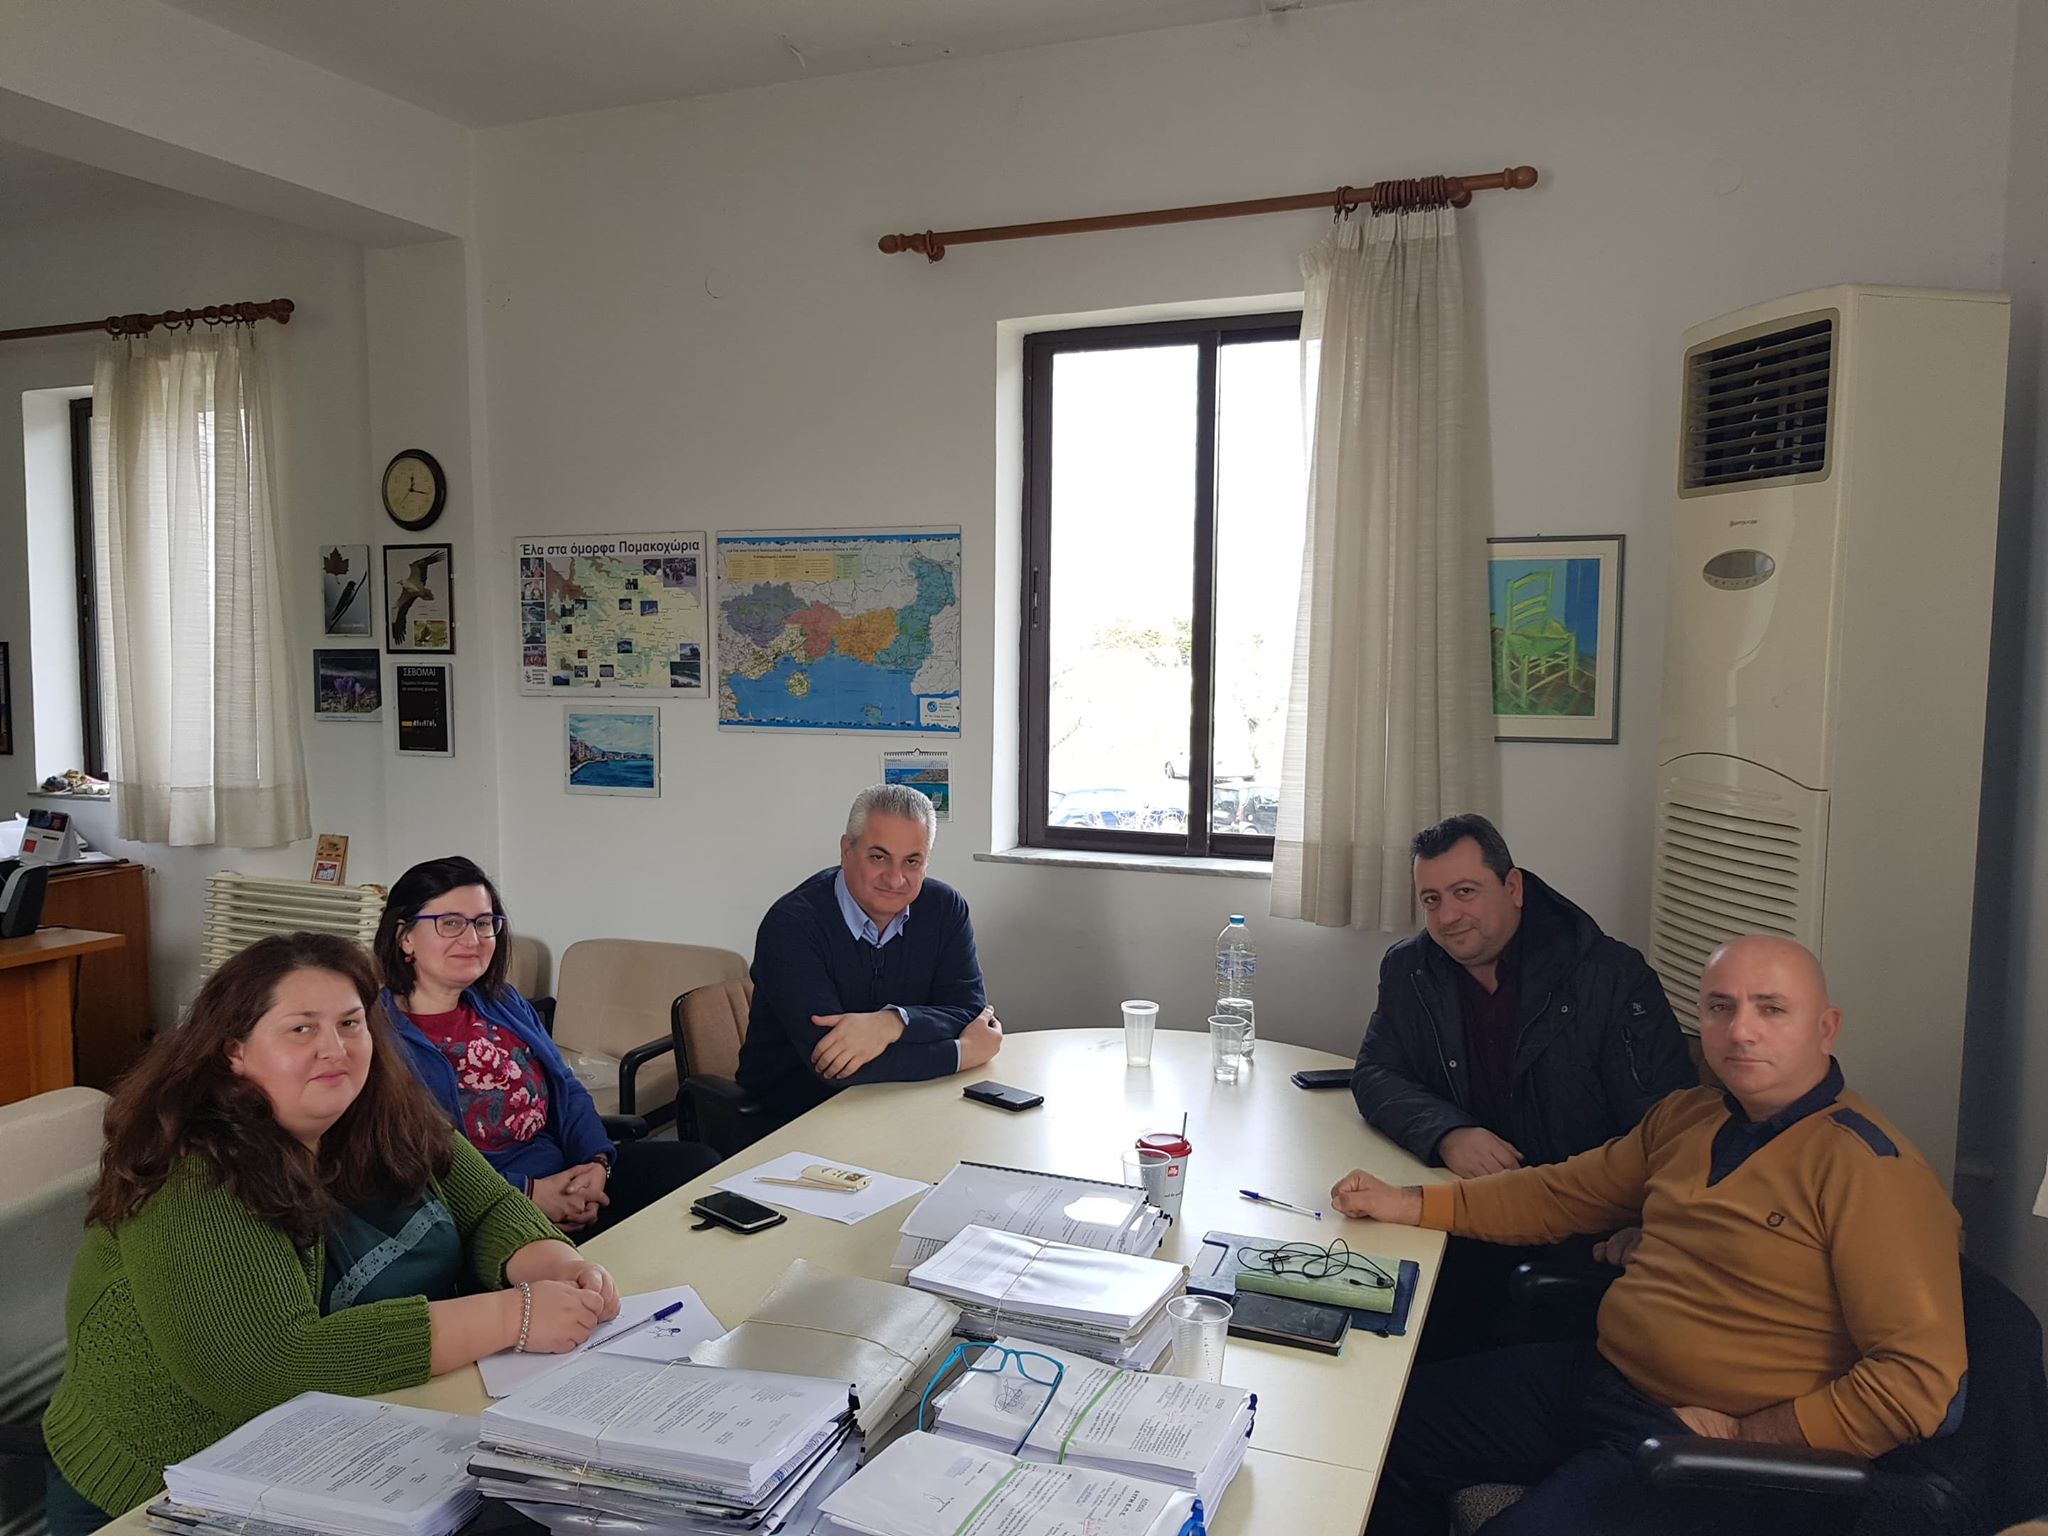 ΔΗΜΟΣ ΣΑΜΟΘΡΑΚΗΣ | Επίσκεψη του Δημάρχου Σαμοθράκης στη Διεύθυνση Περιβάλλοντος και Χωρικού Σχεδιασμού Α.Μ.Θ